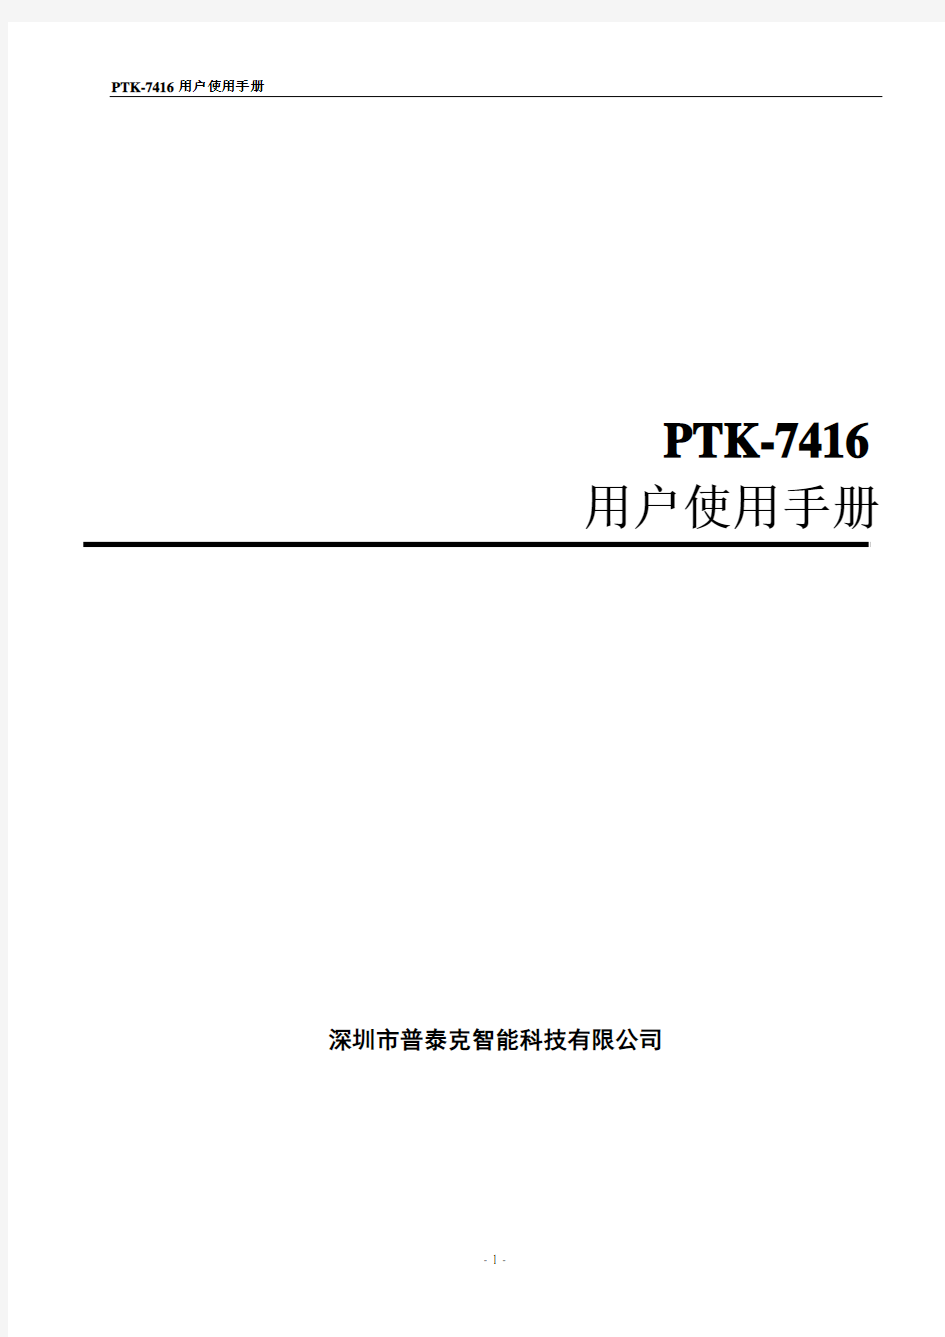 PTK-7416用户使用手册